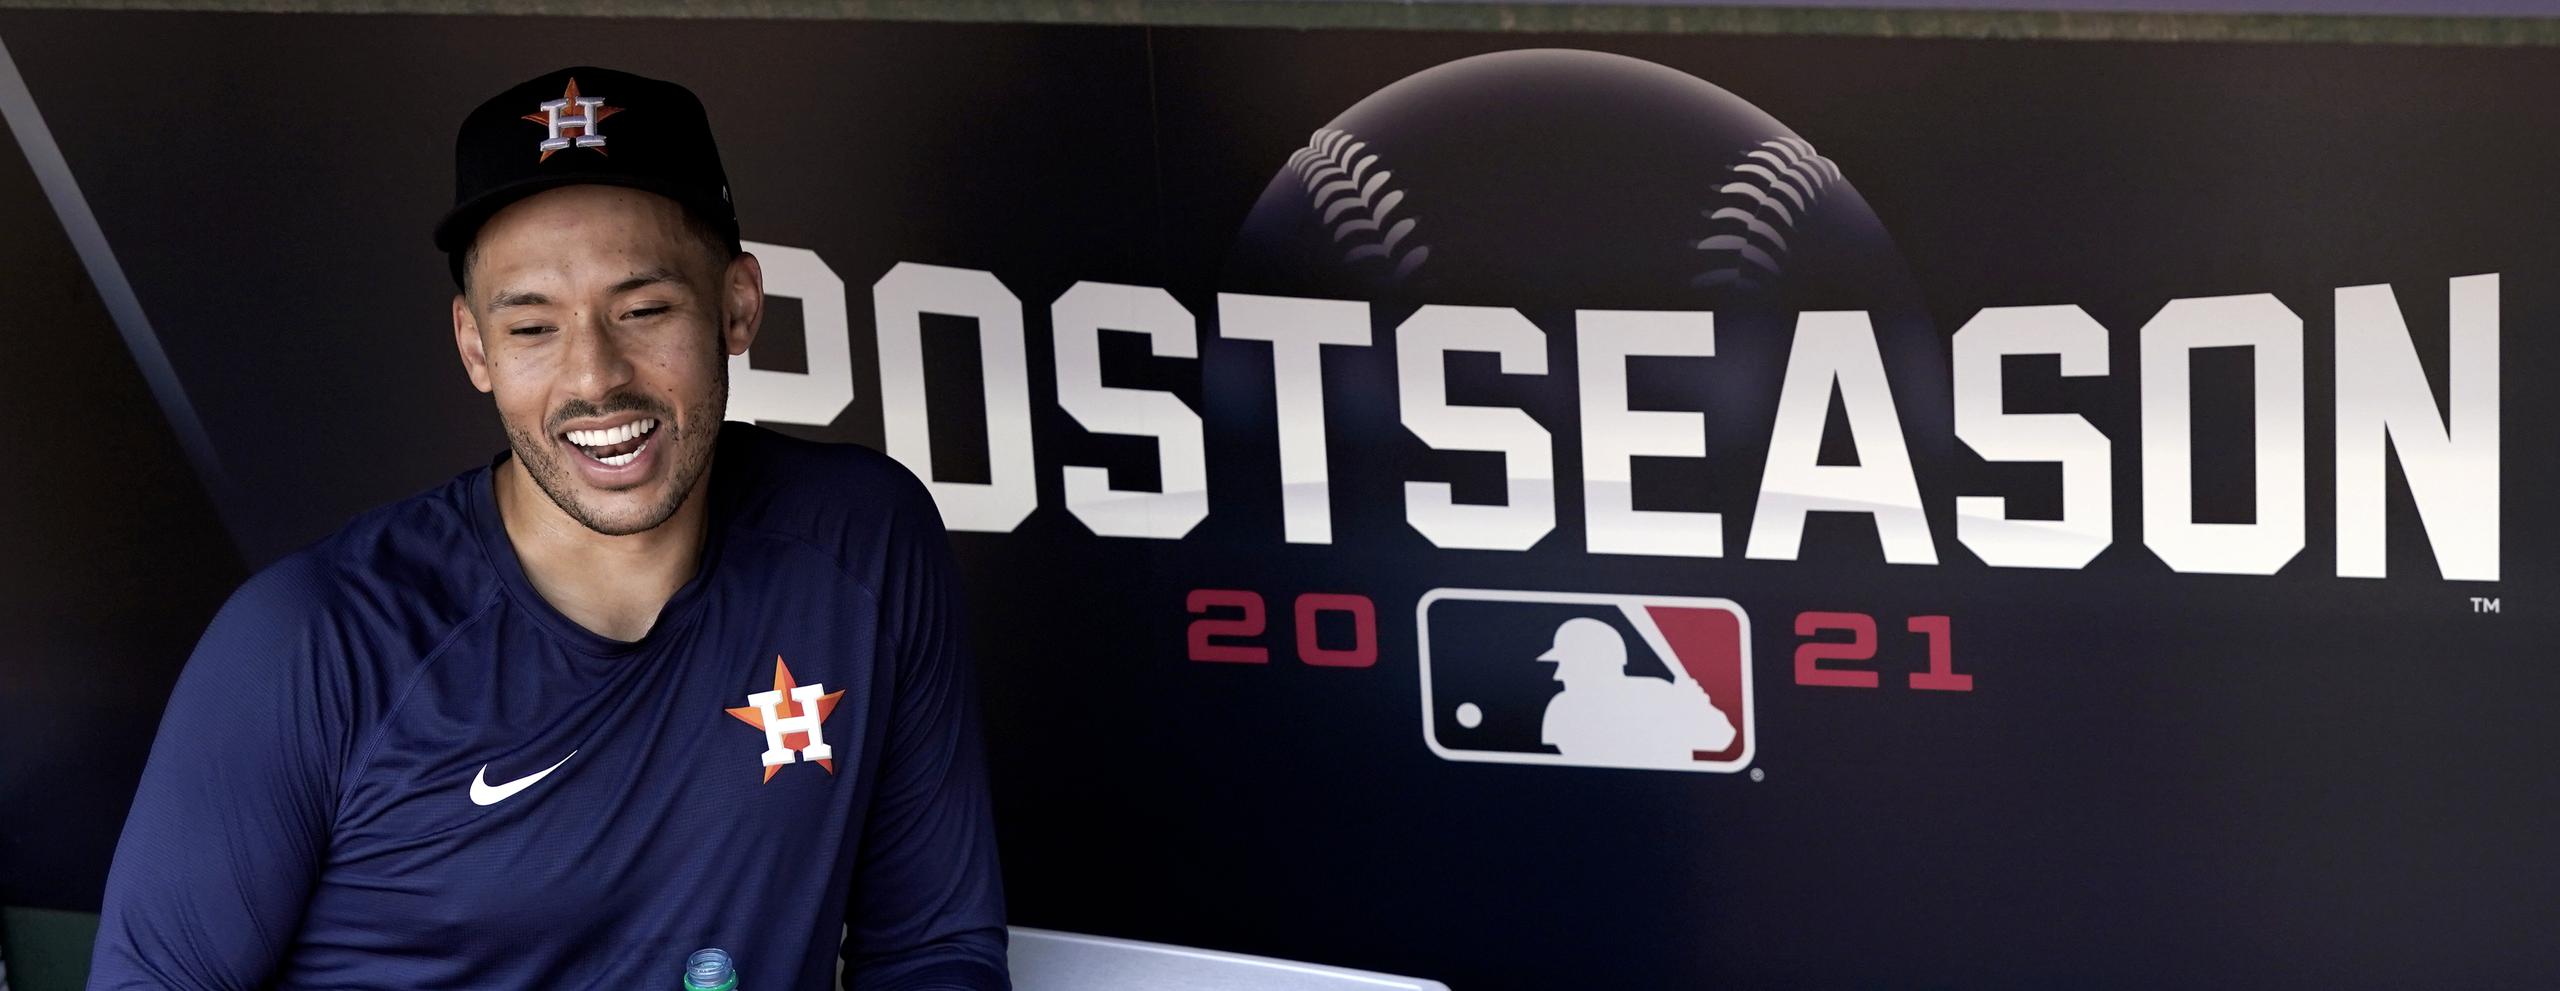 Carlos Correa, campocorto de los Astros de Houston, sonríe durante una charla con la prensa en una práctica ayer.